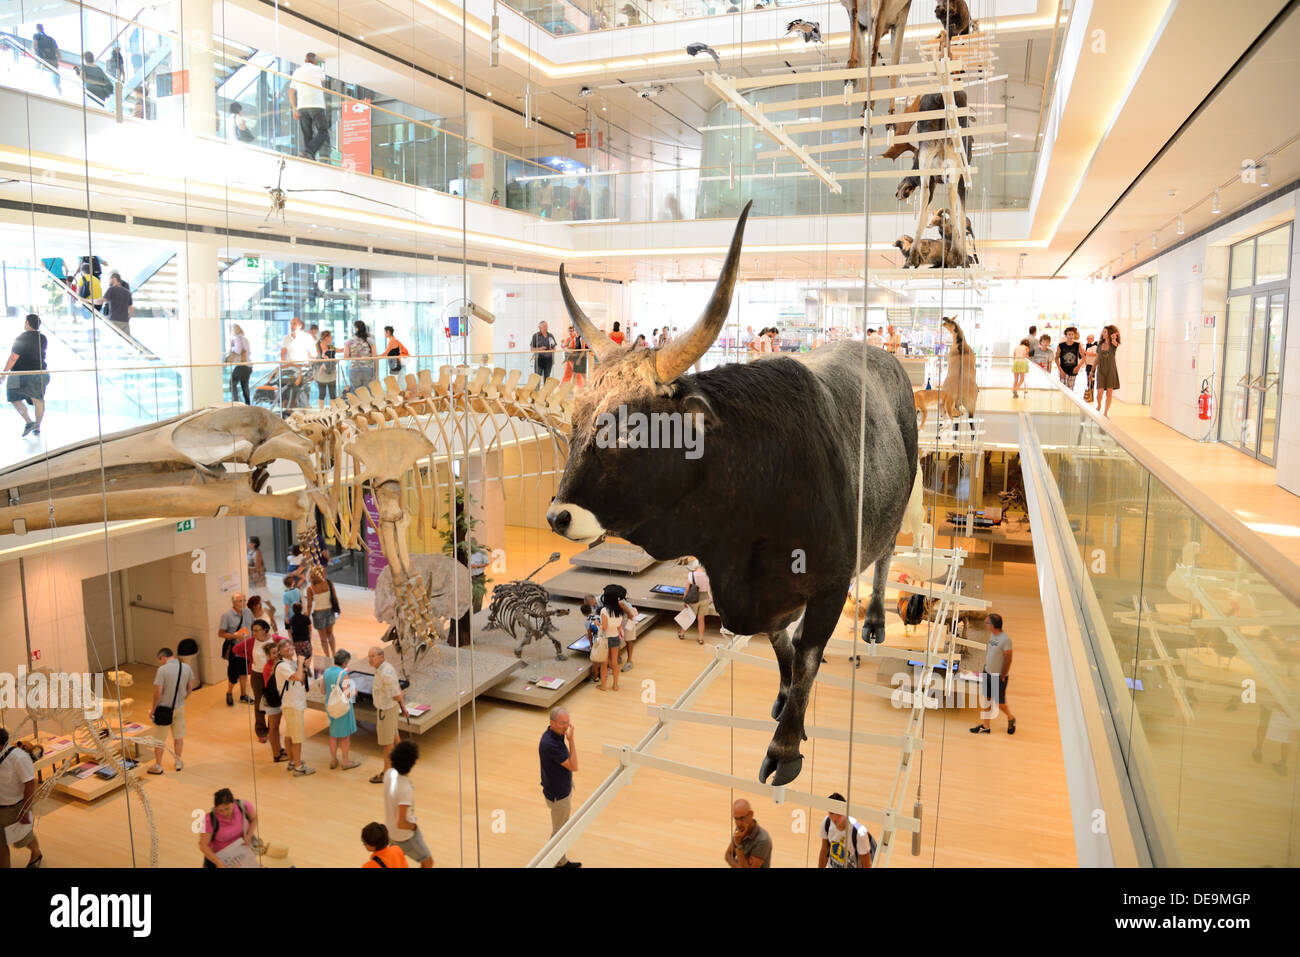 TRENTO, Italia- agosto 6: La Musa, il museo interattivo progettato dall architetto Renzo Piano, è stato inaugurato il 23 luglio 2013. Foto Stock